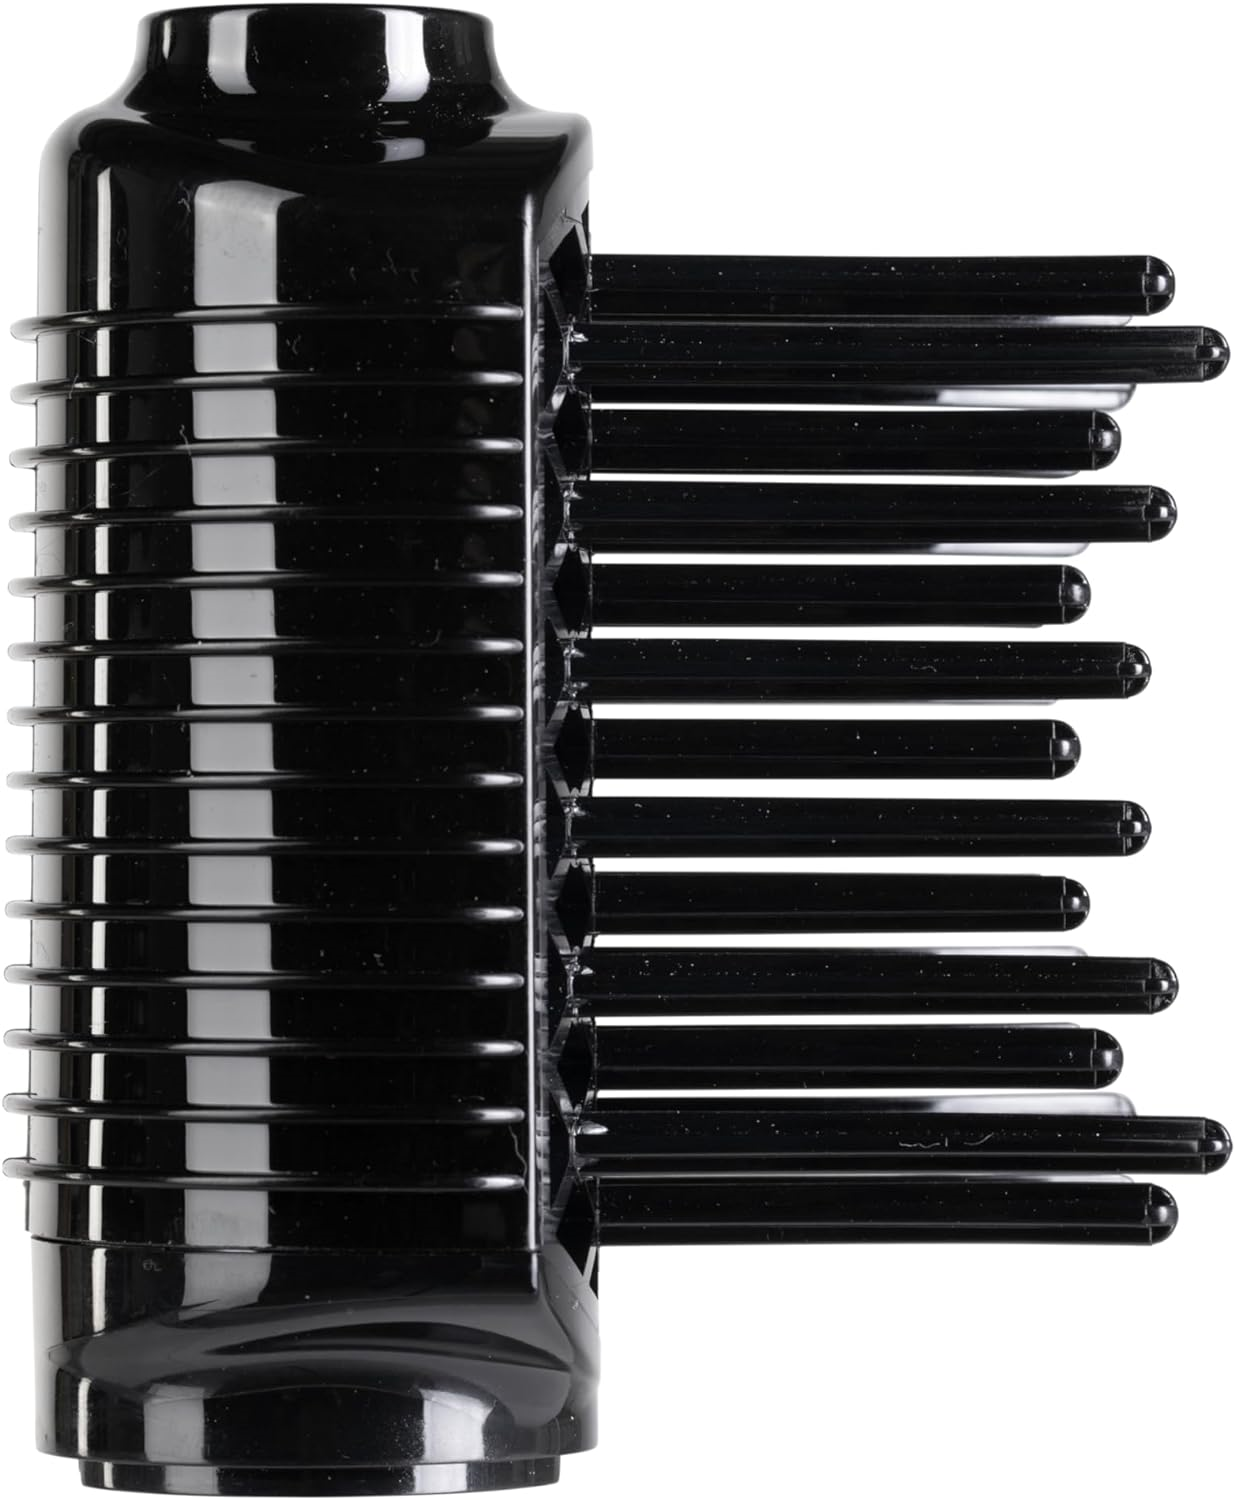 Braun Haircare AS530E Warmluft-Lockenbürste mit Dampffunktion, 1000W, Max 